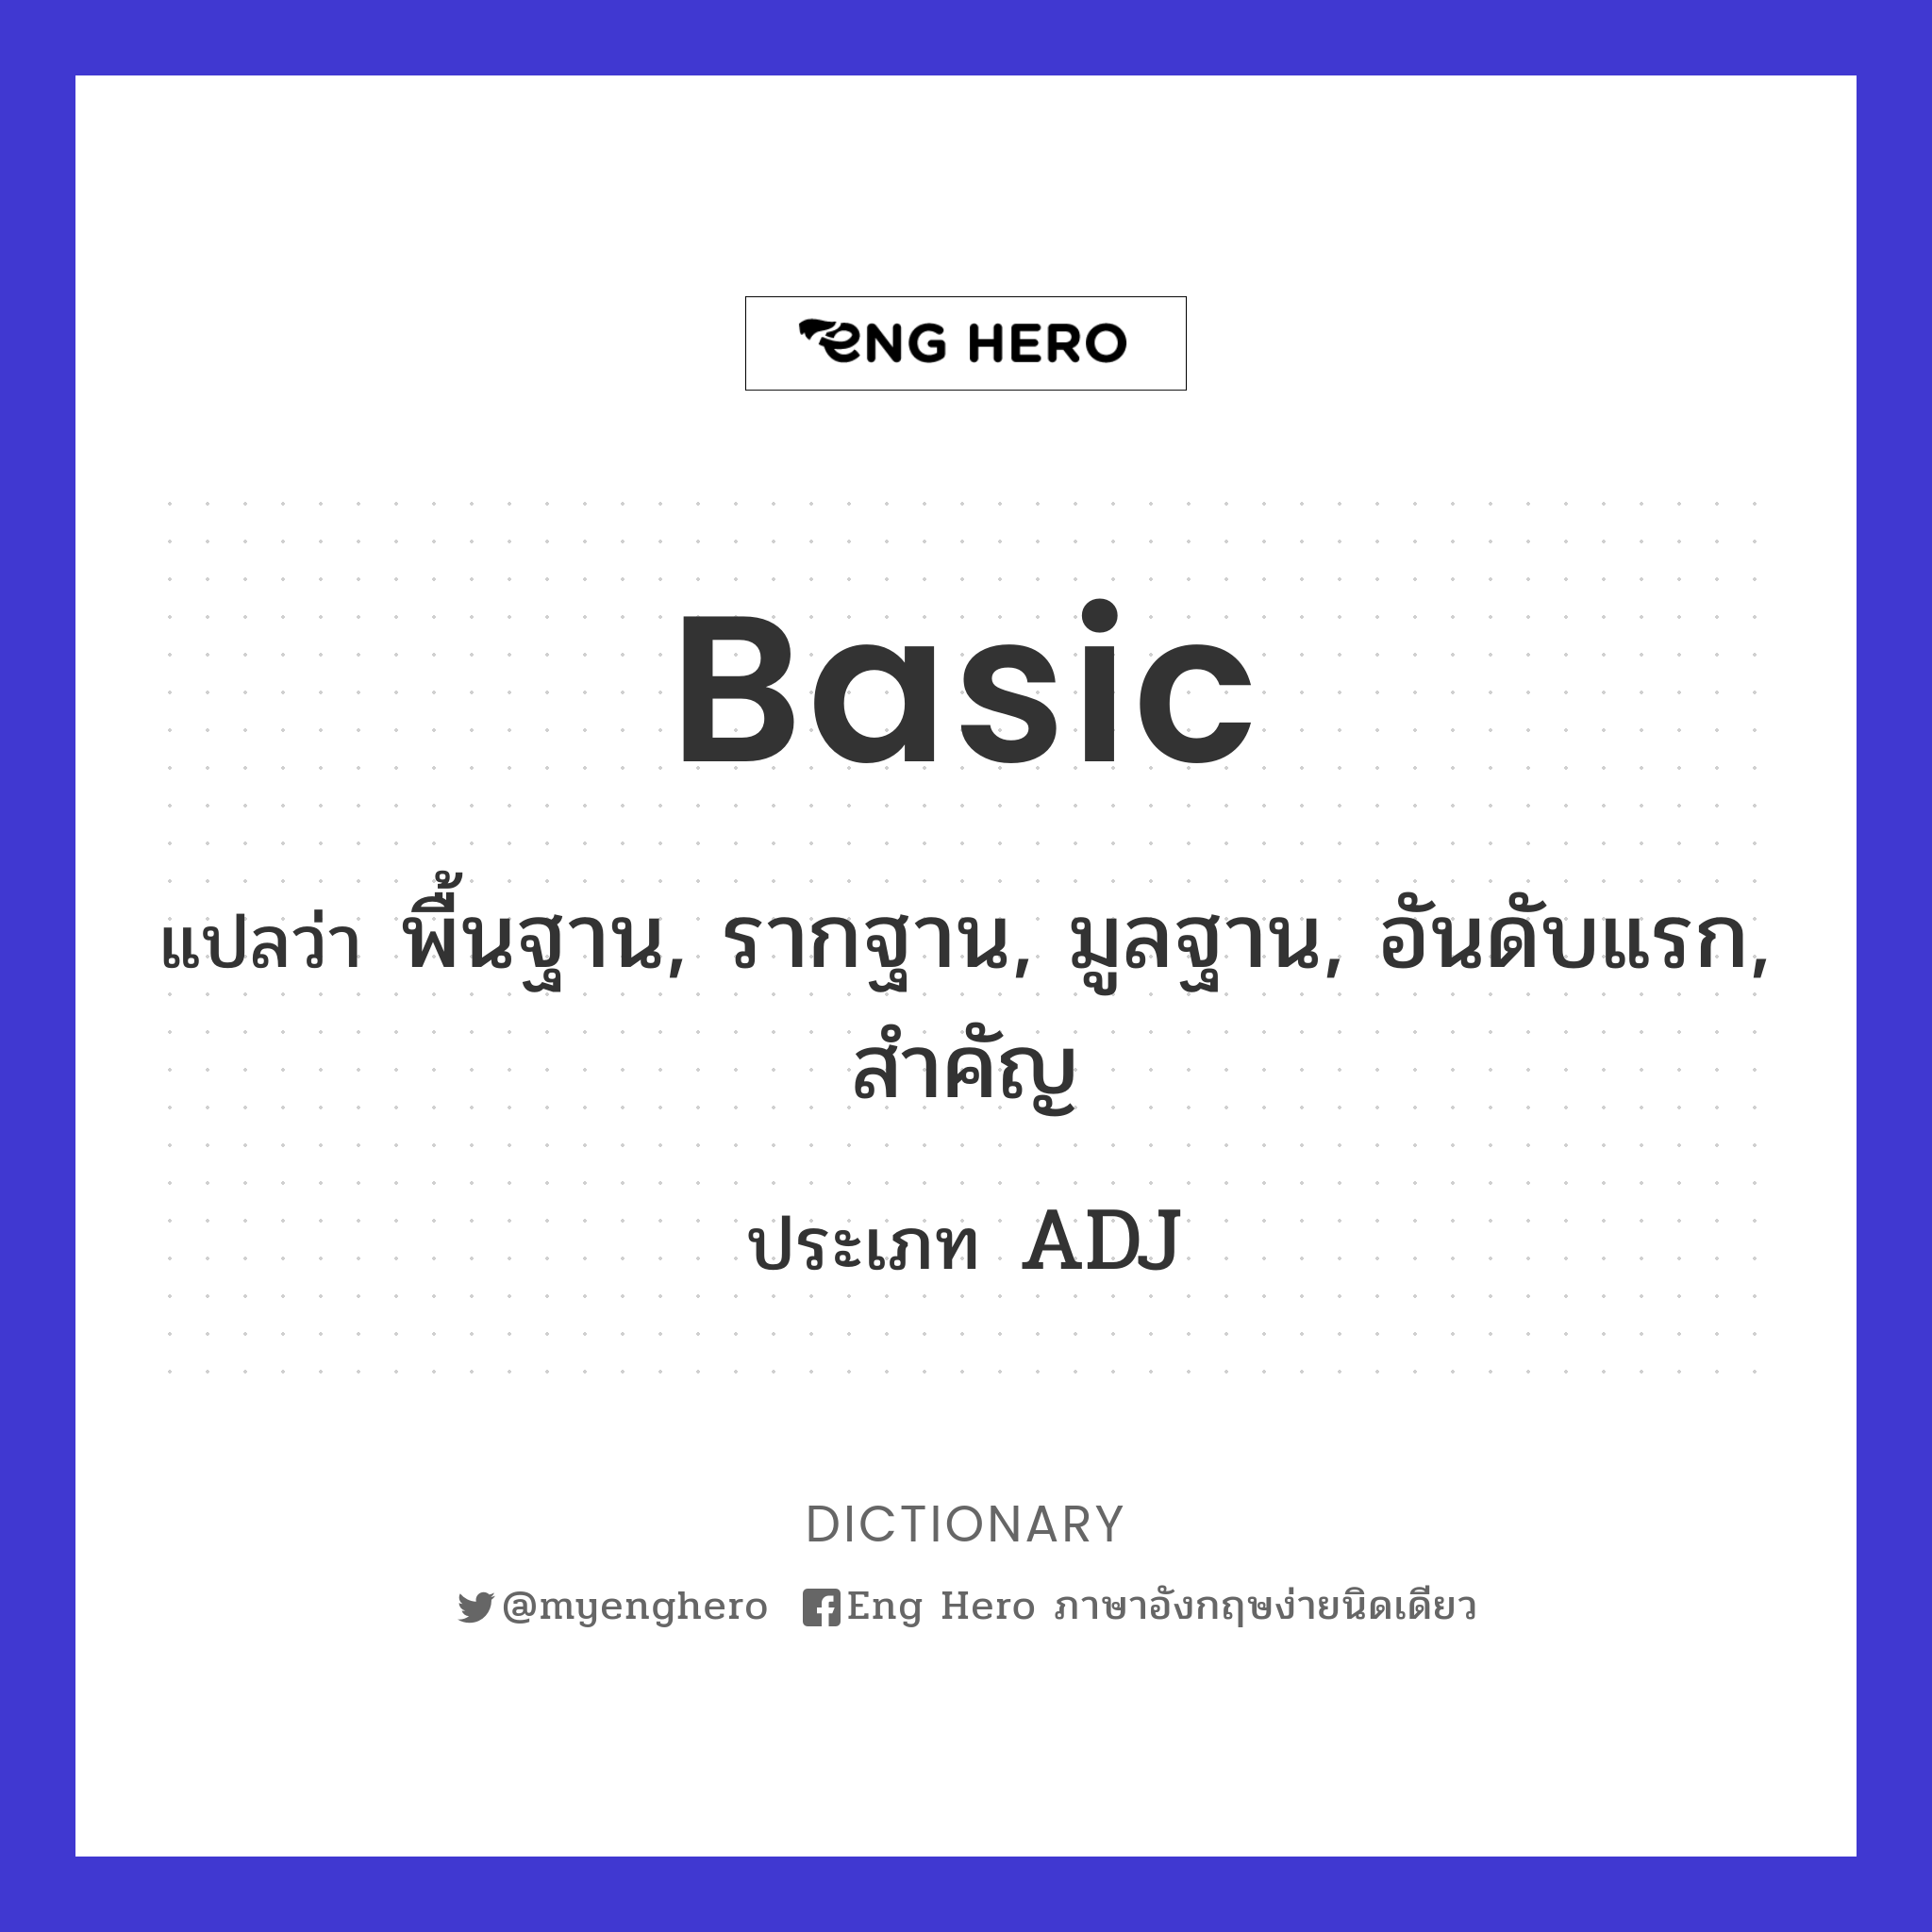 basic